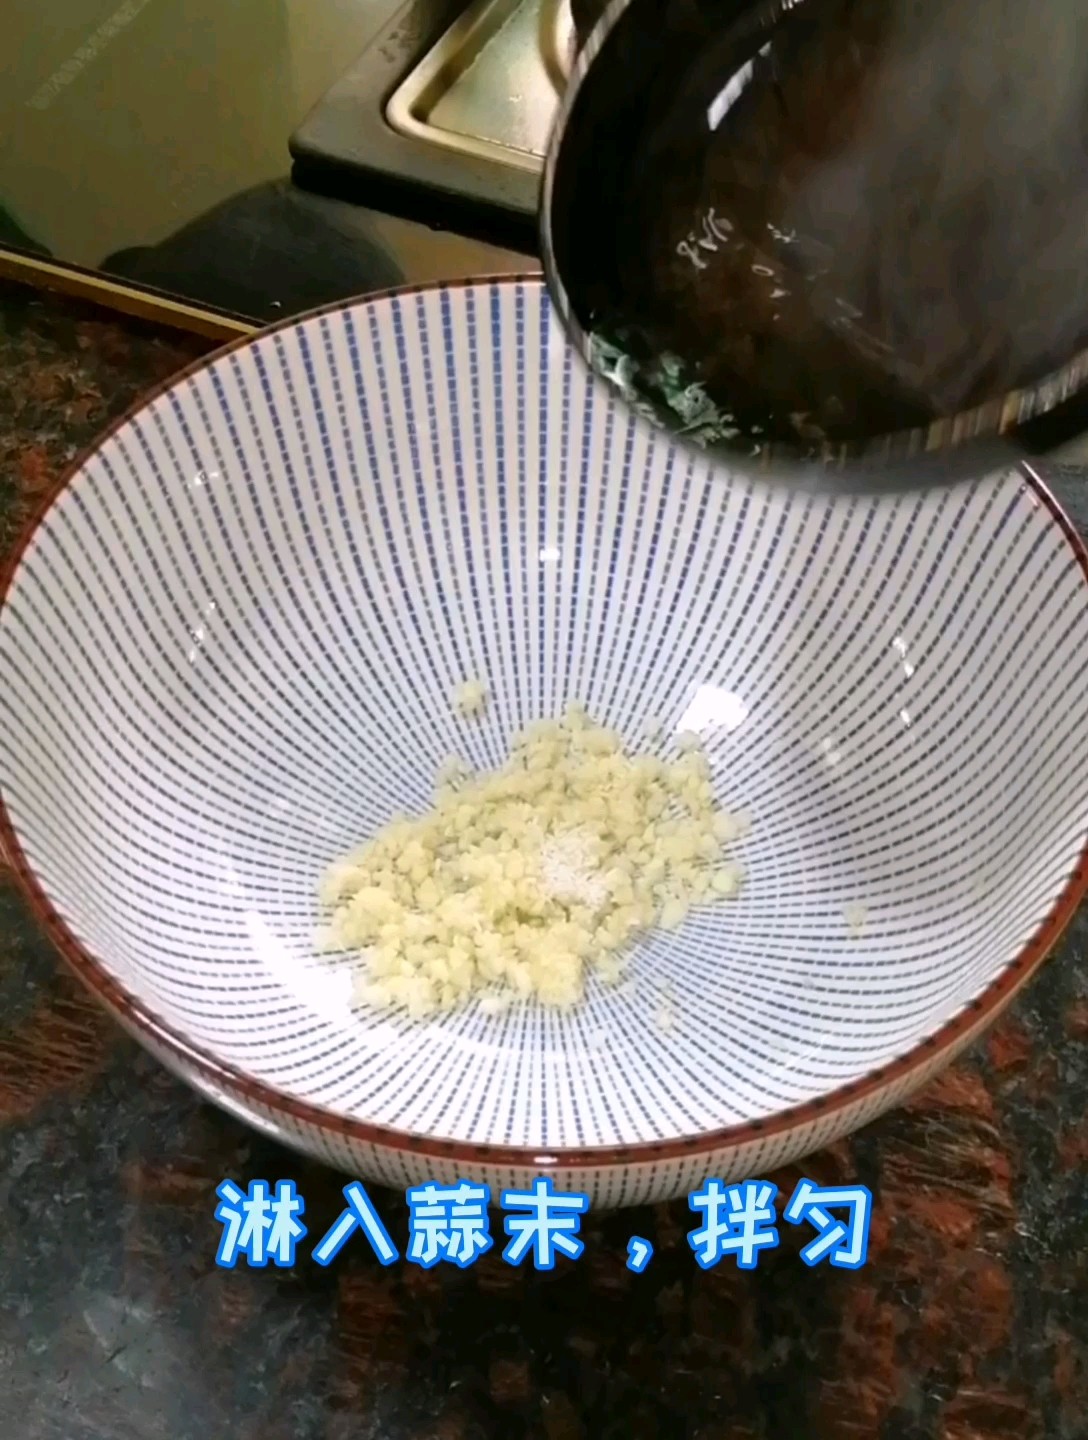 Xiabuxiabu Cold Seaweed recipe